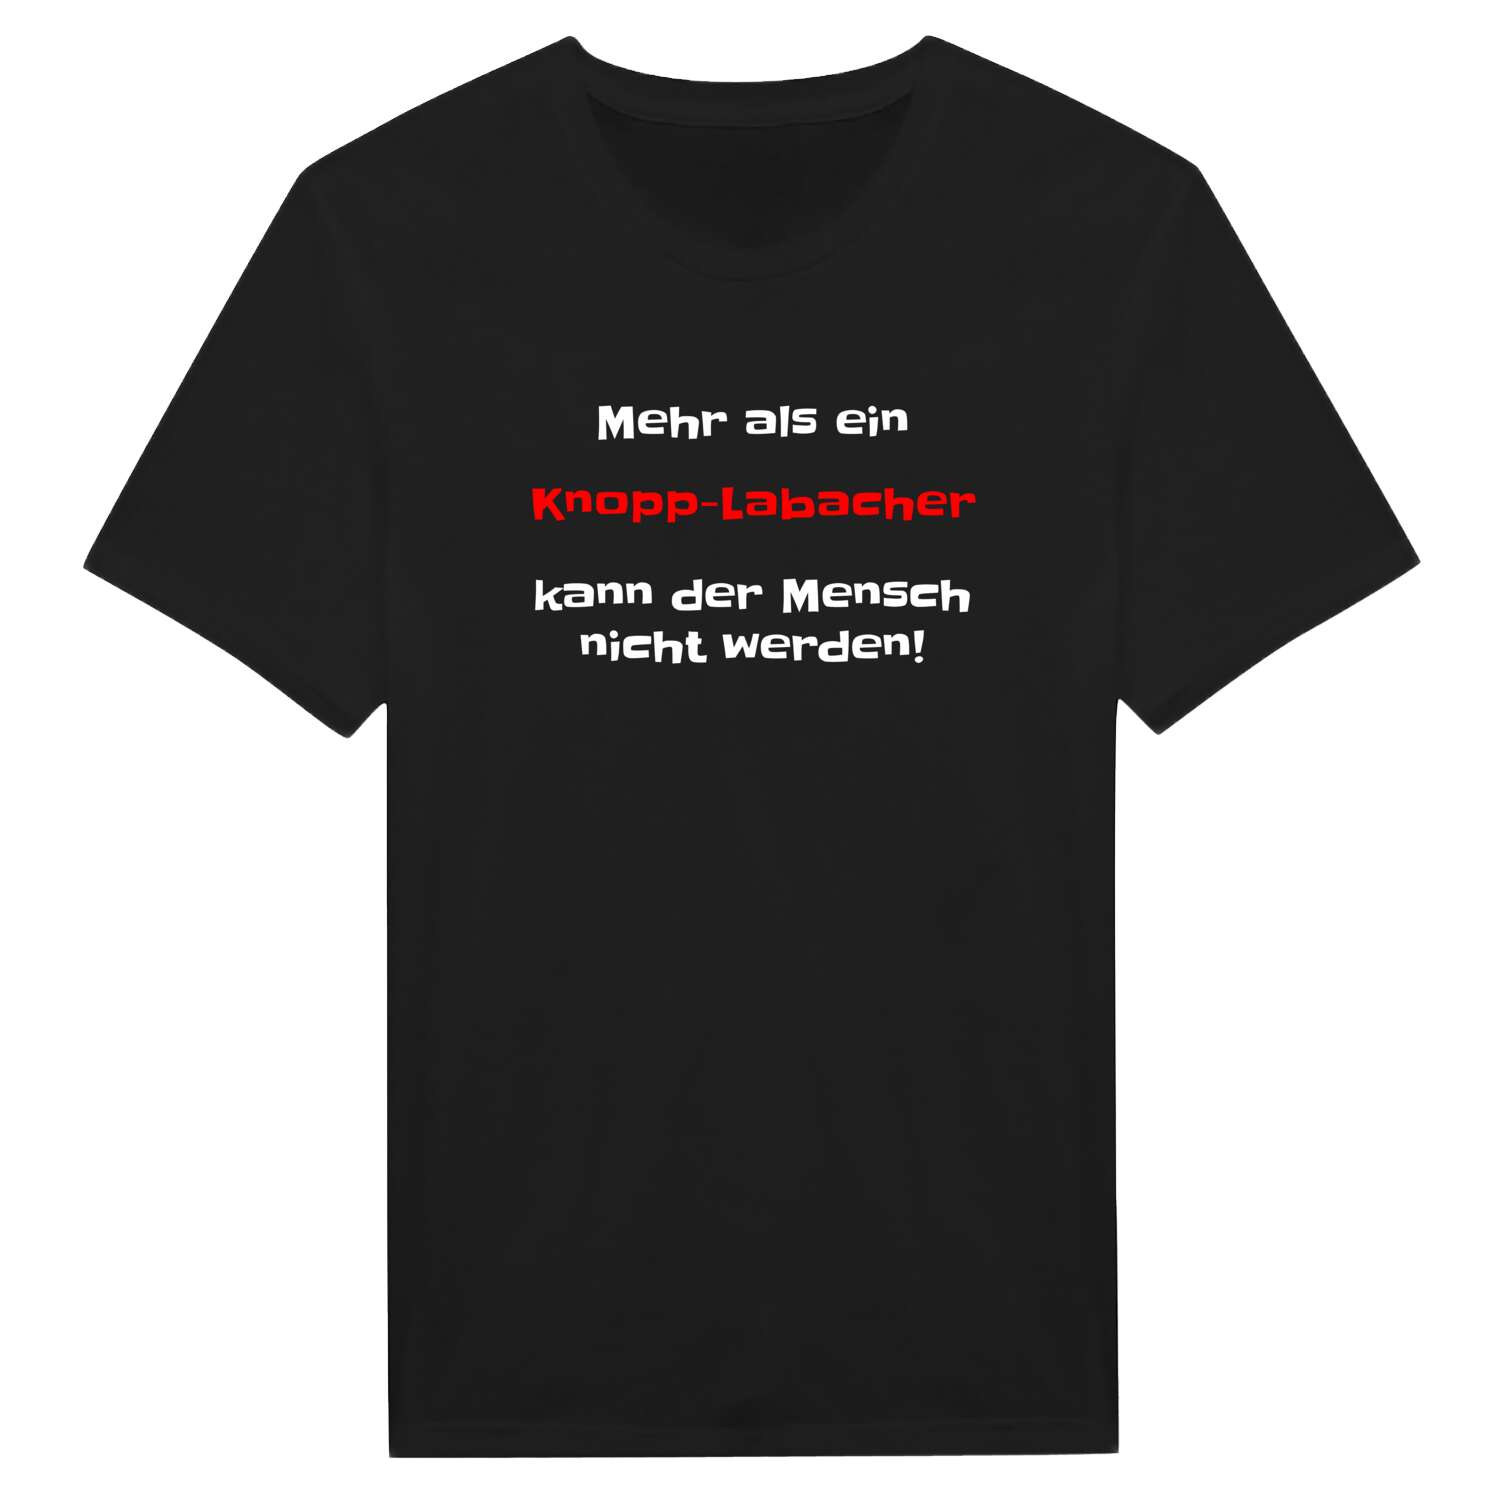 Knopp-Labach T-Shirt »Mehr als ein«